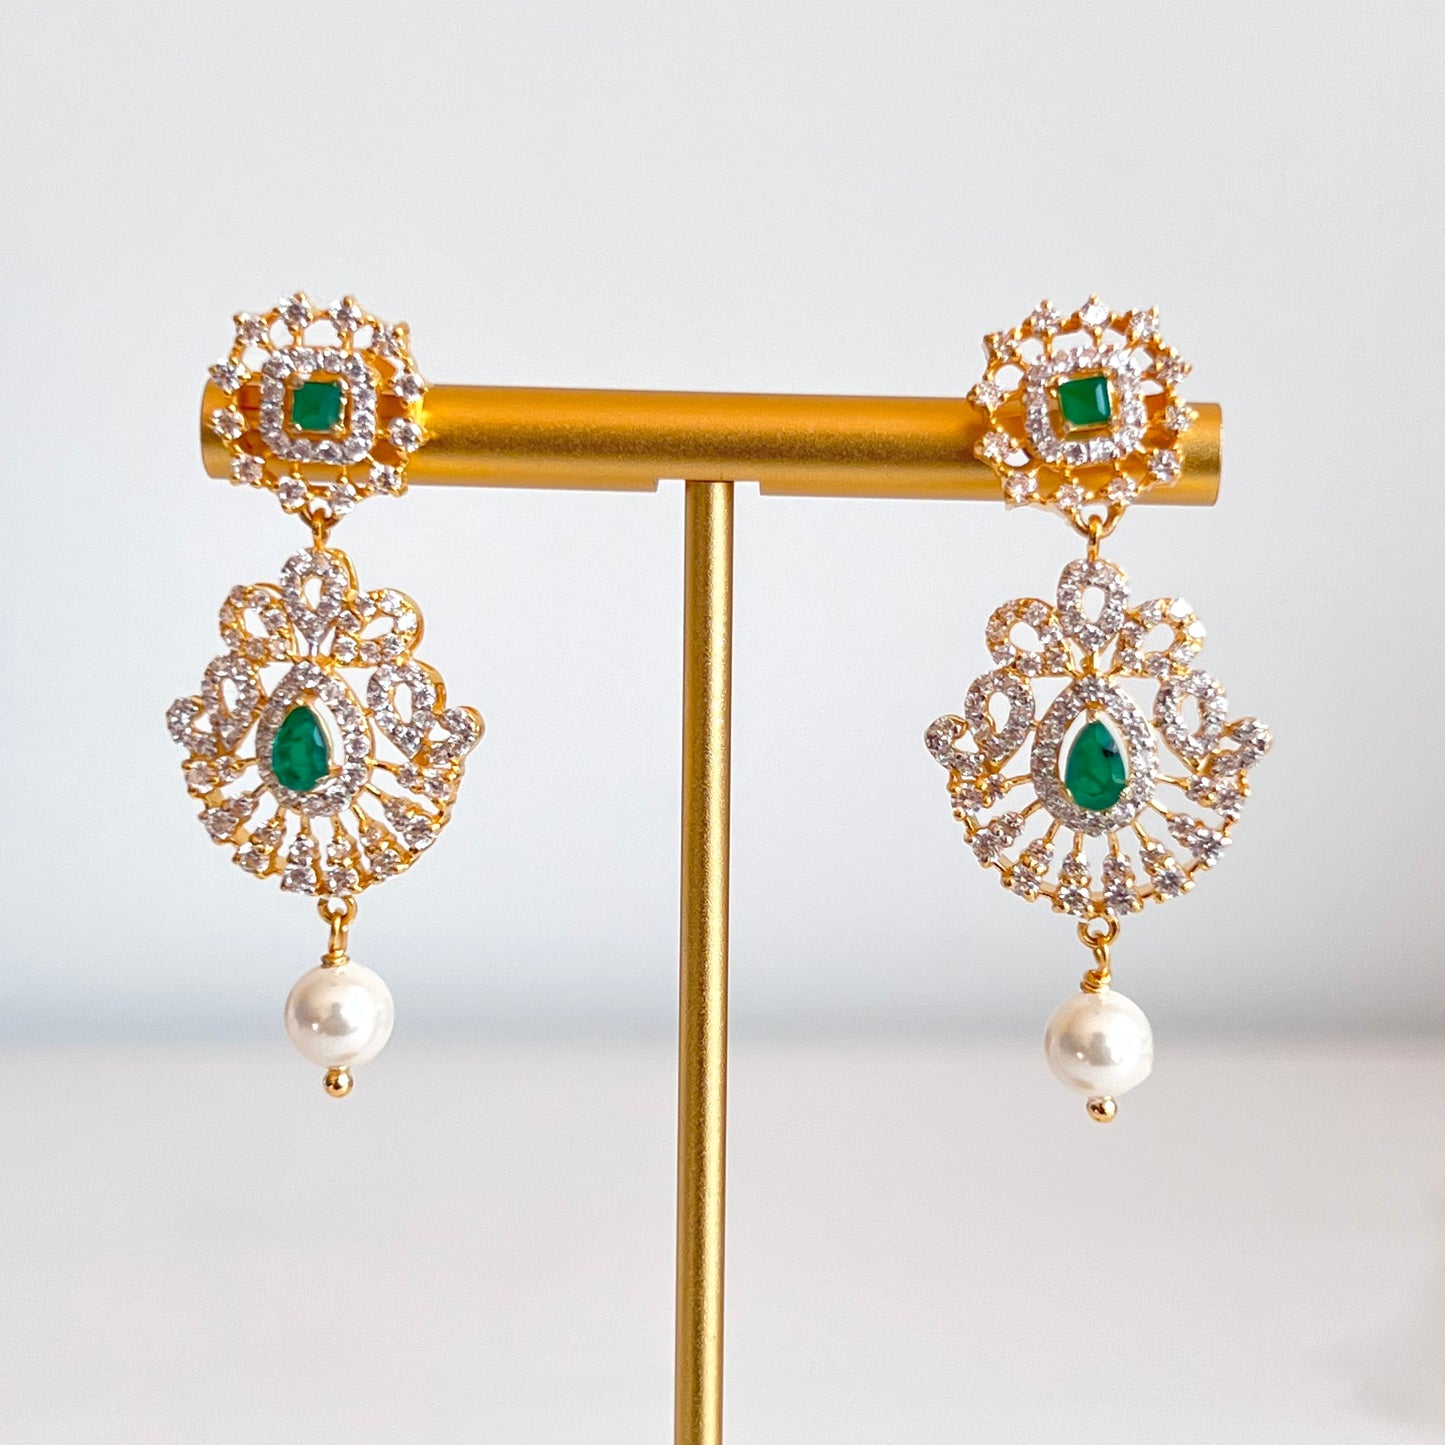 Glitzy Cubic Zarconia Necklace Set with Eccentric Emerald Colored Stones